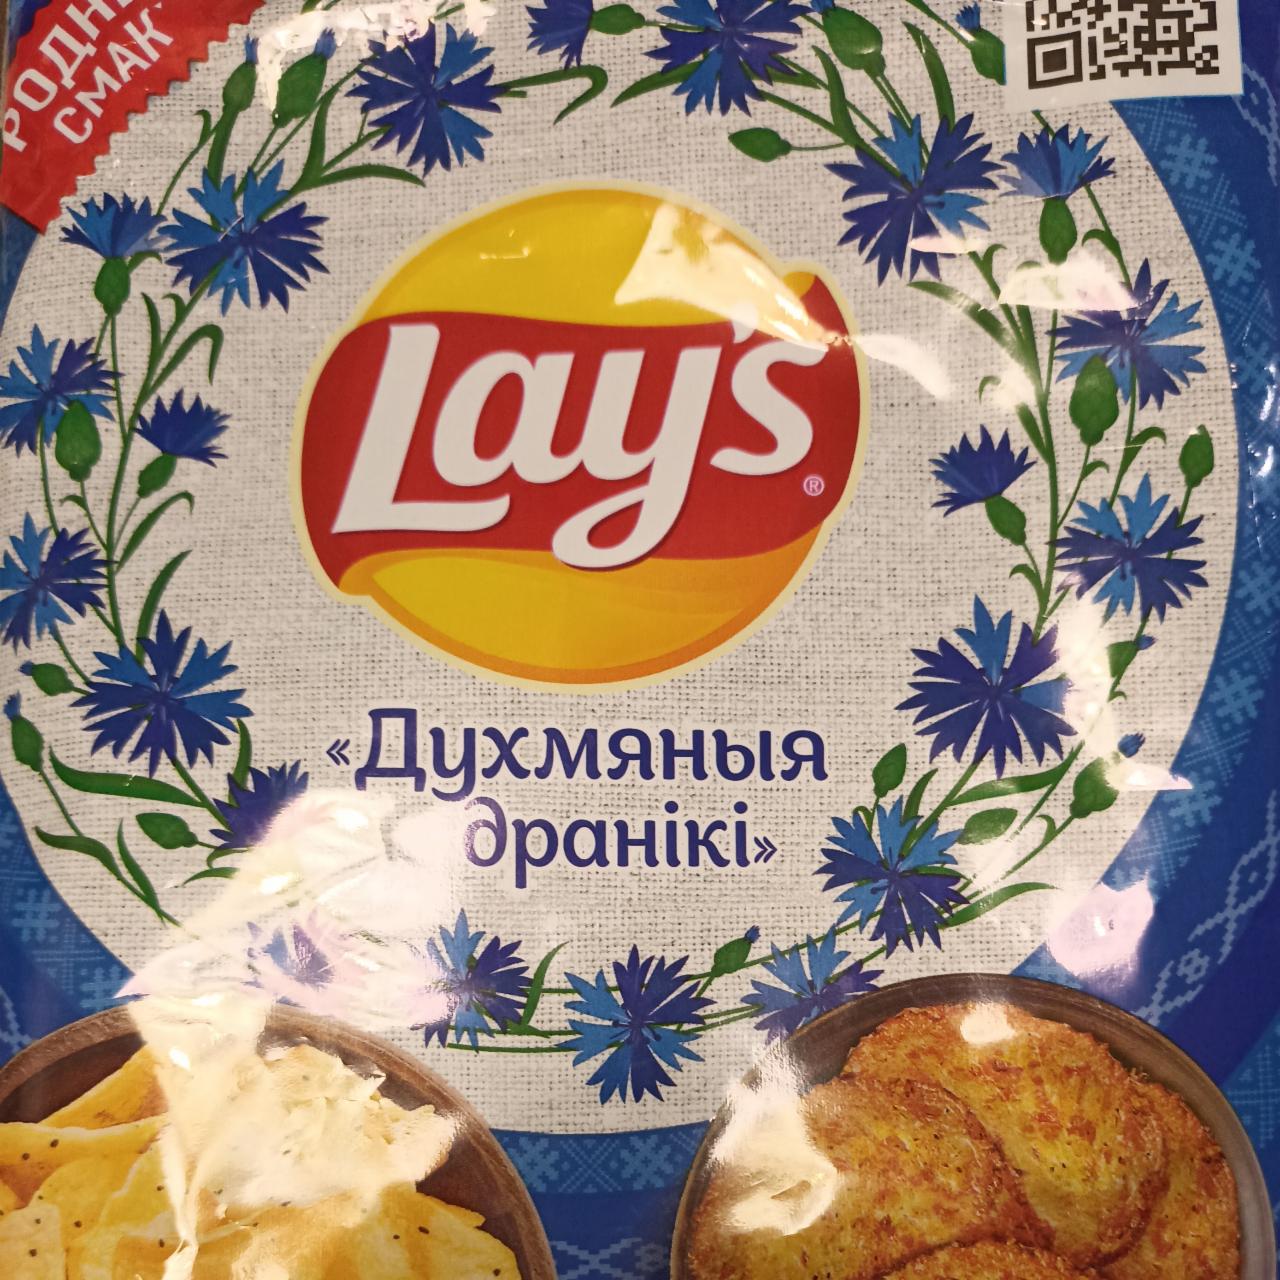 Фото - Чипсы картофельные со вкусом драников Lay's